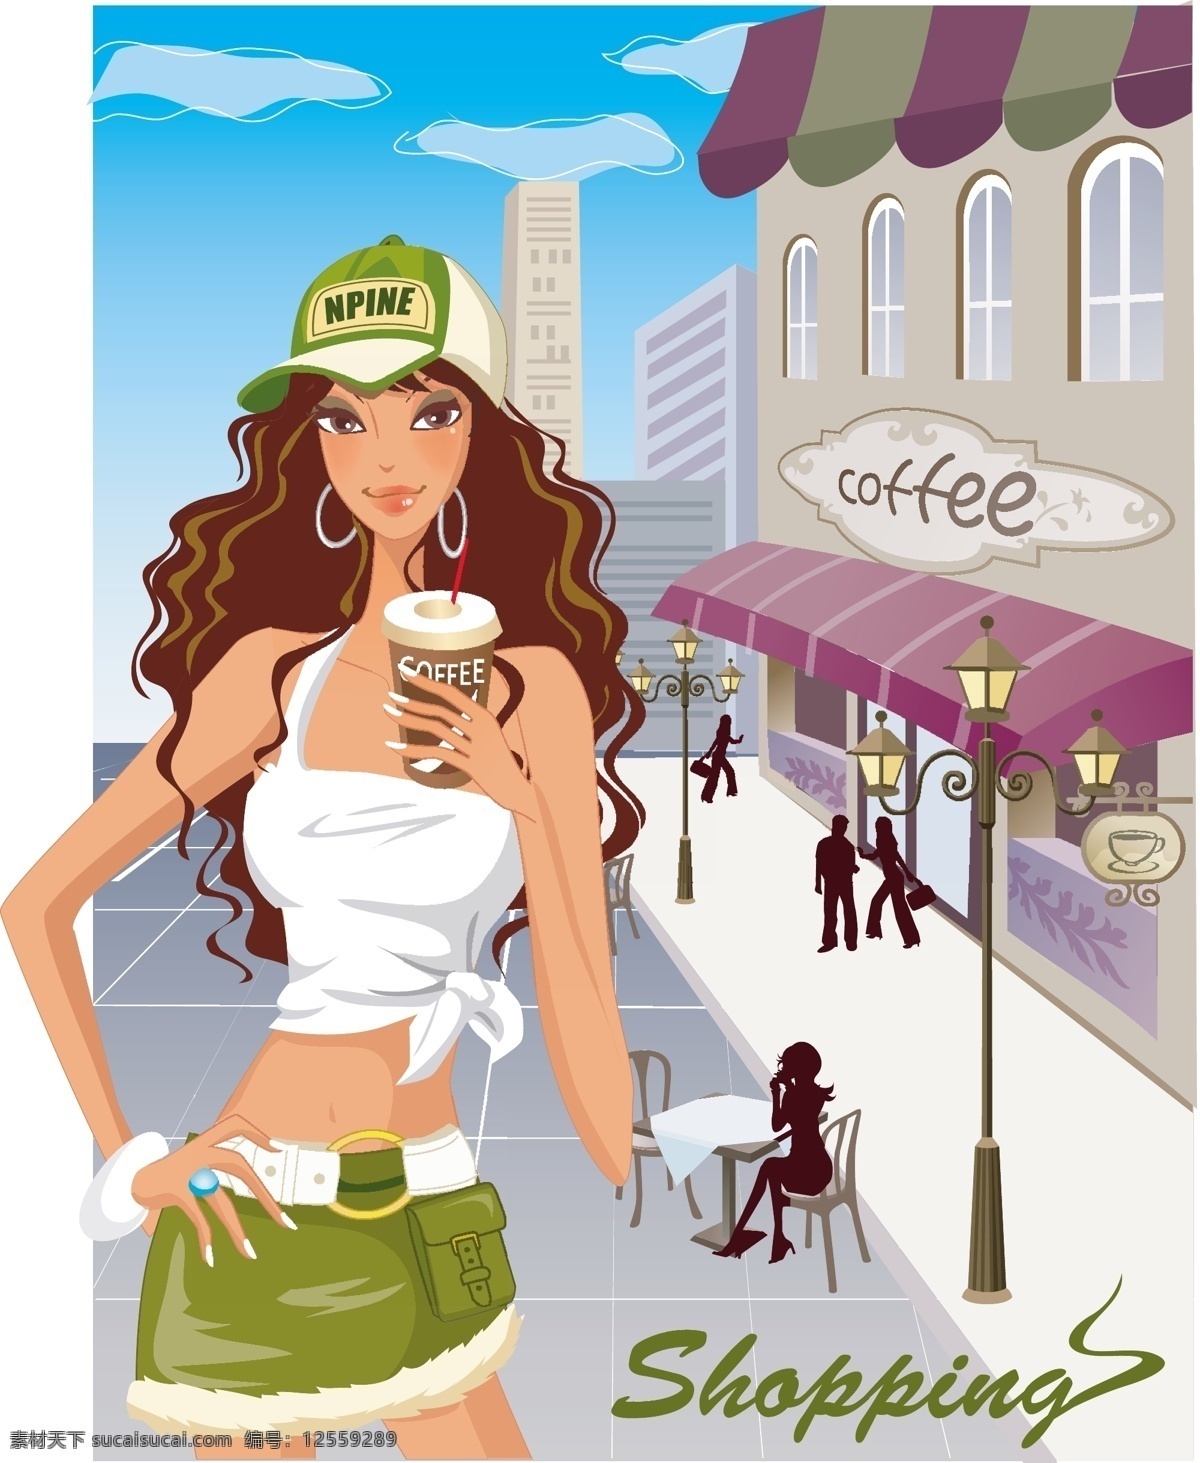 时尚 女性 购物 eps格式 咖啡 帽子 女 商店 接到 矢量图 矢量人物